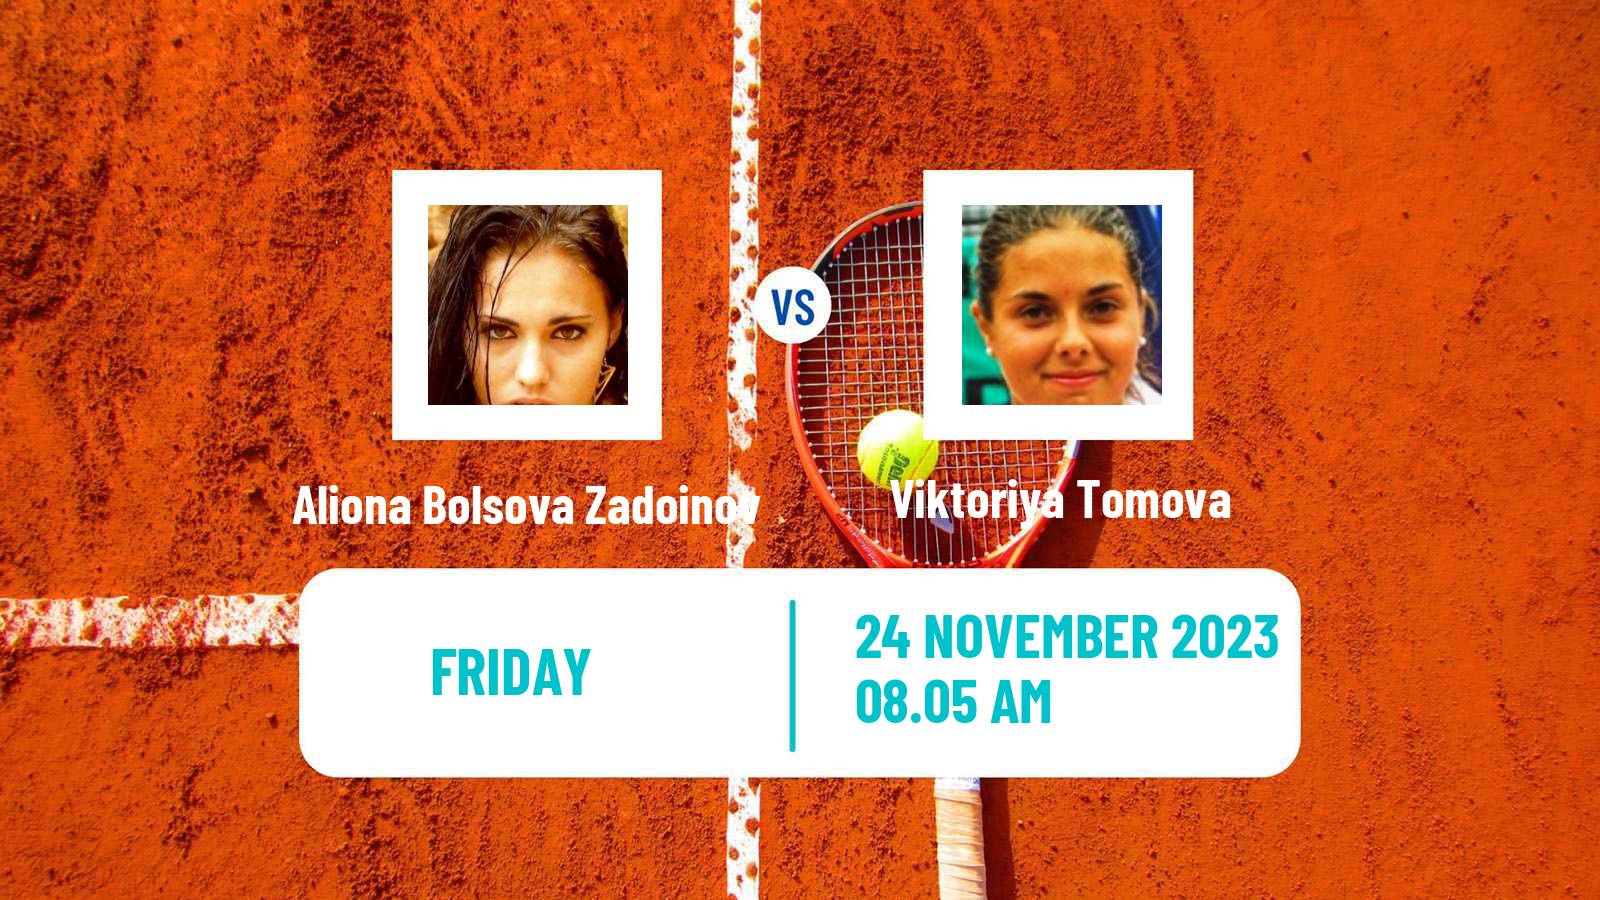 Tennis ITF W100 Valencia Women Aliona Bolsova Zadoinov - Viktoriya Tomova